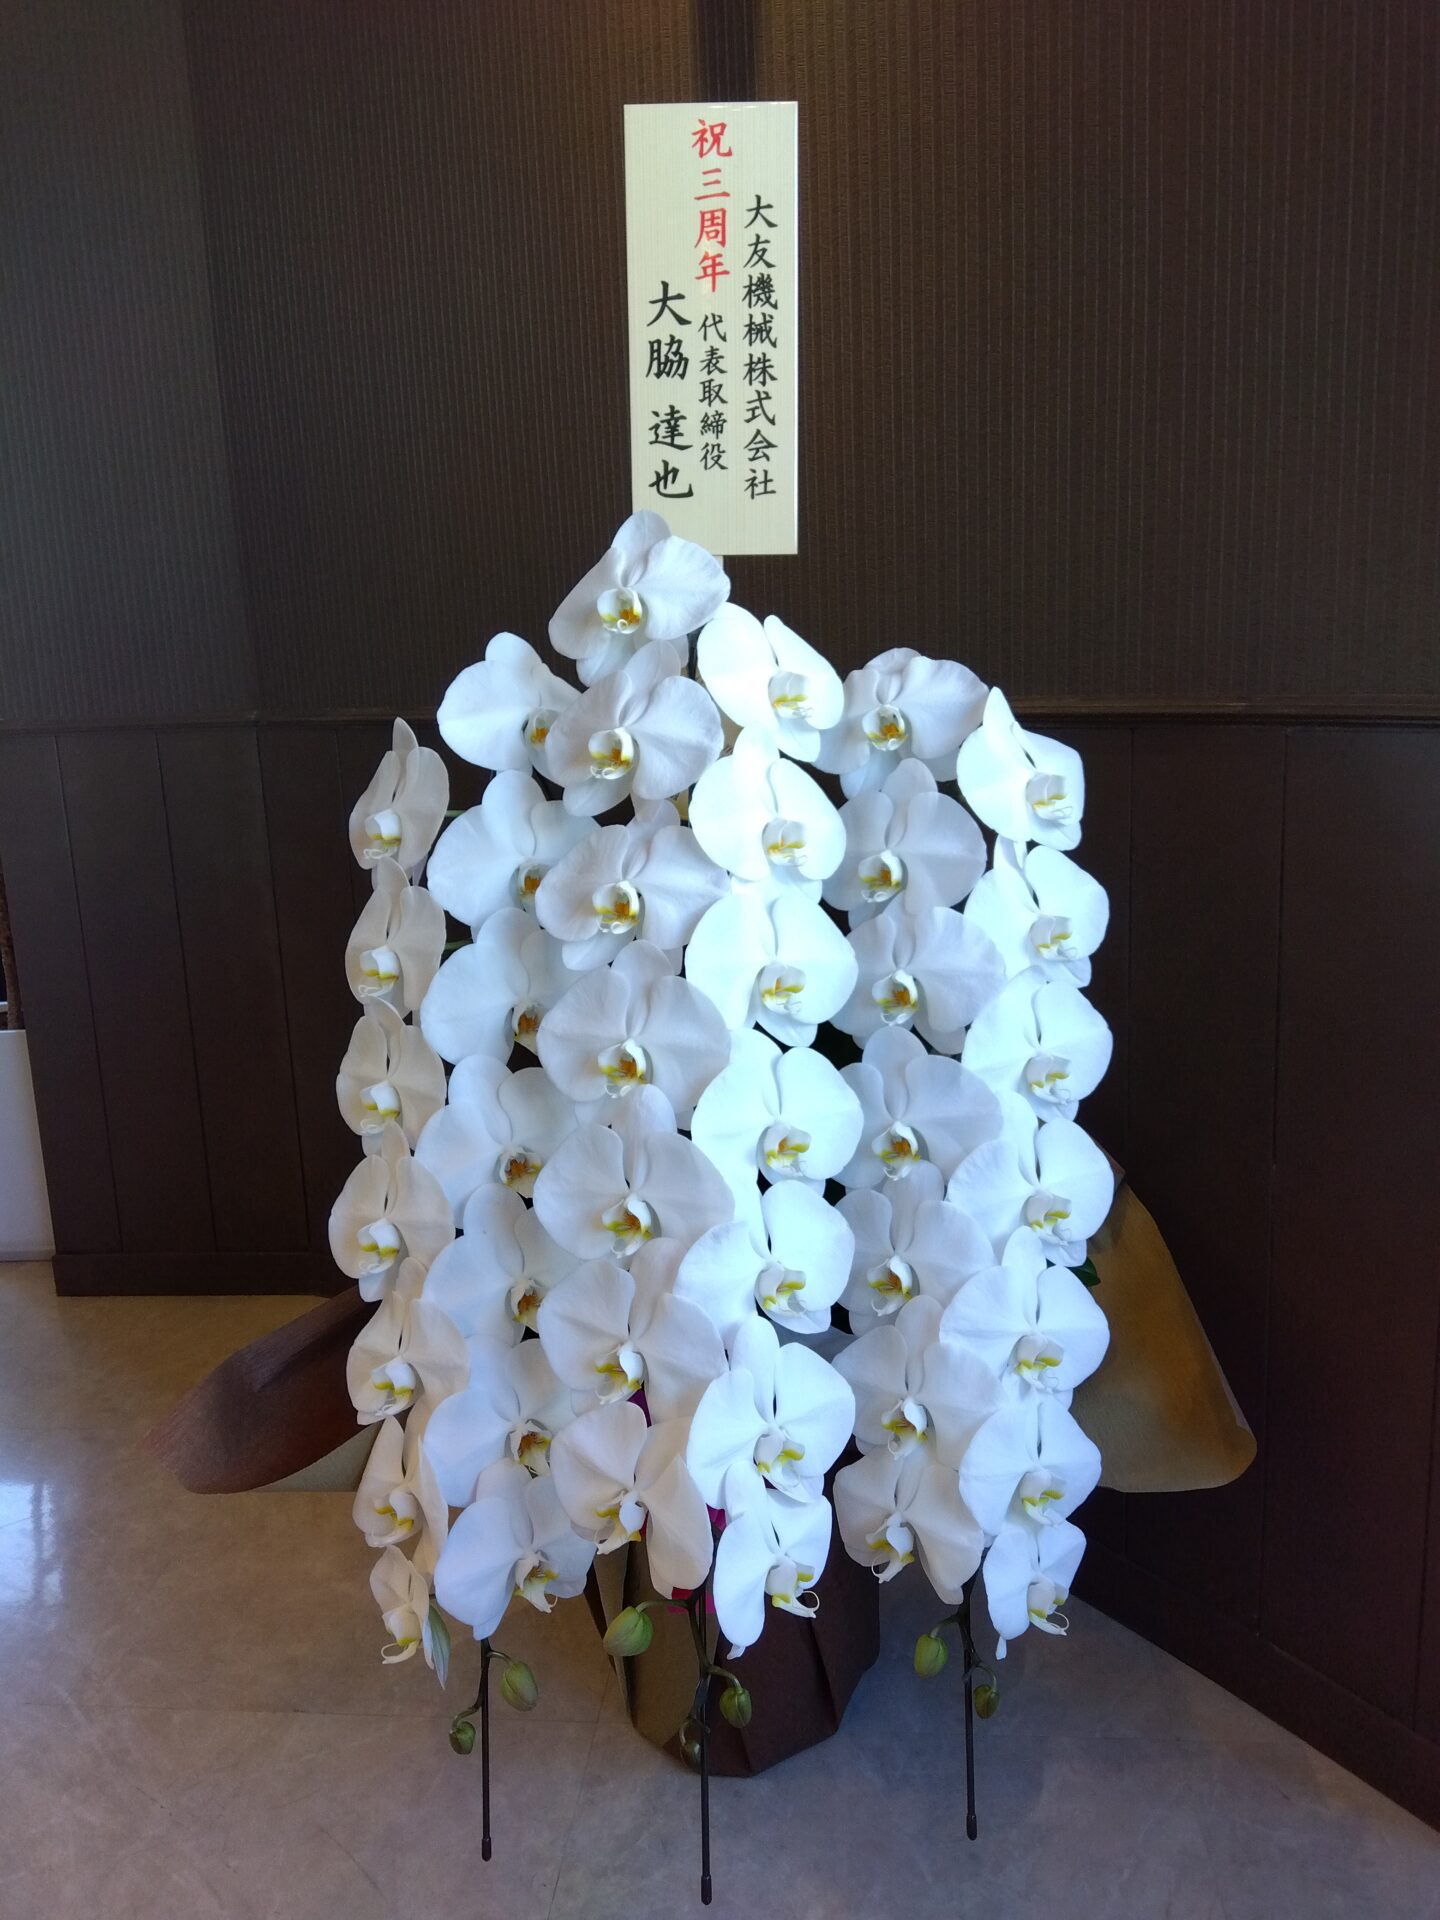 東大阪市 花園本町へ周年お祝いの胡蝶蘭